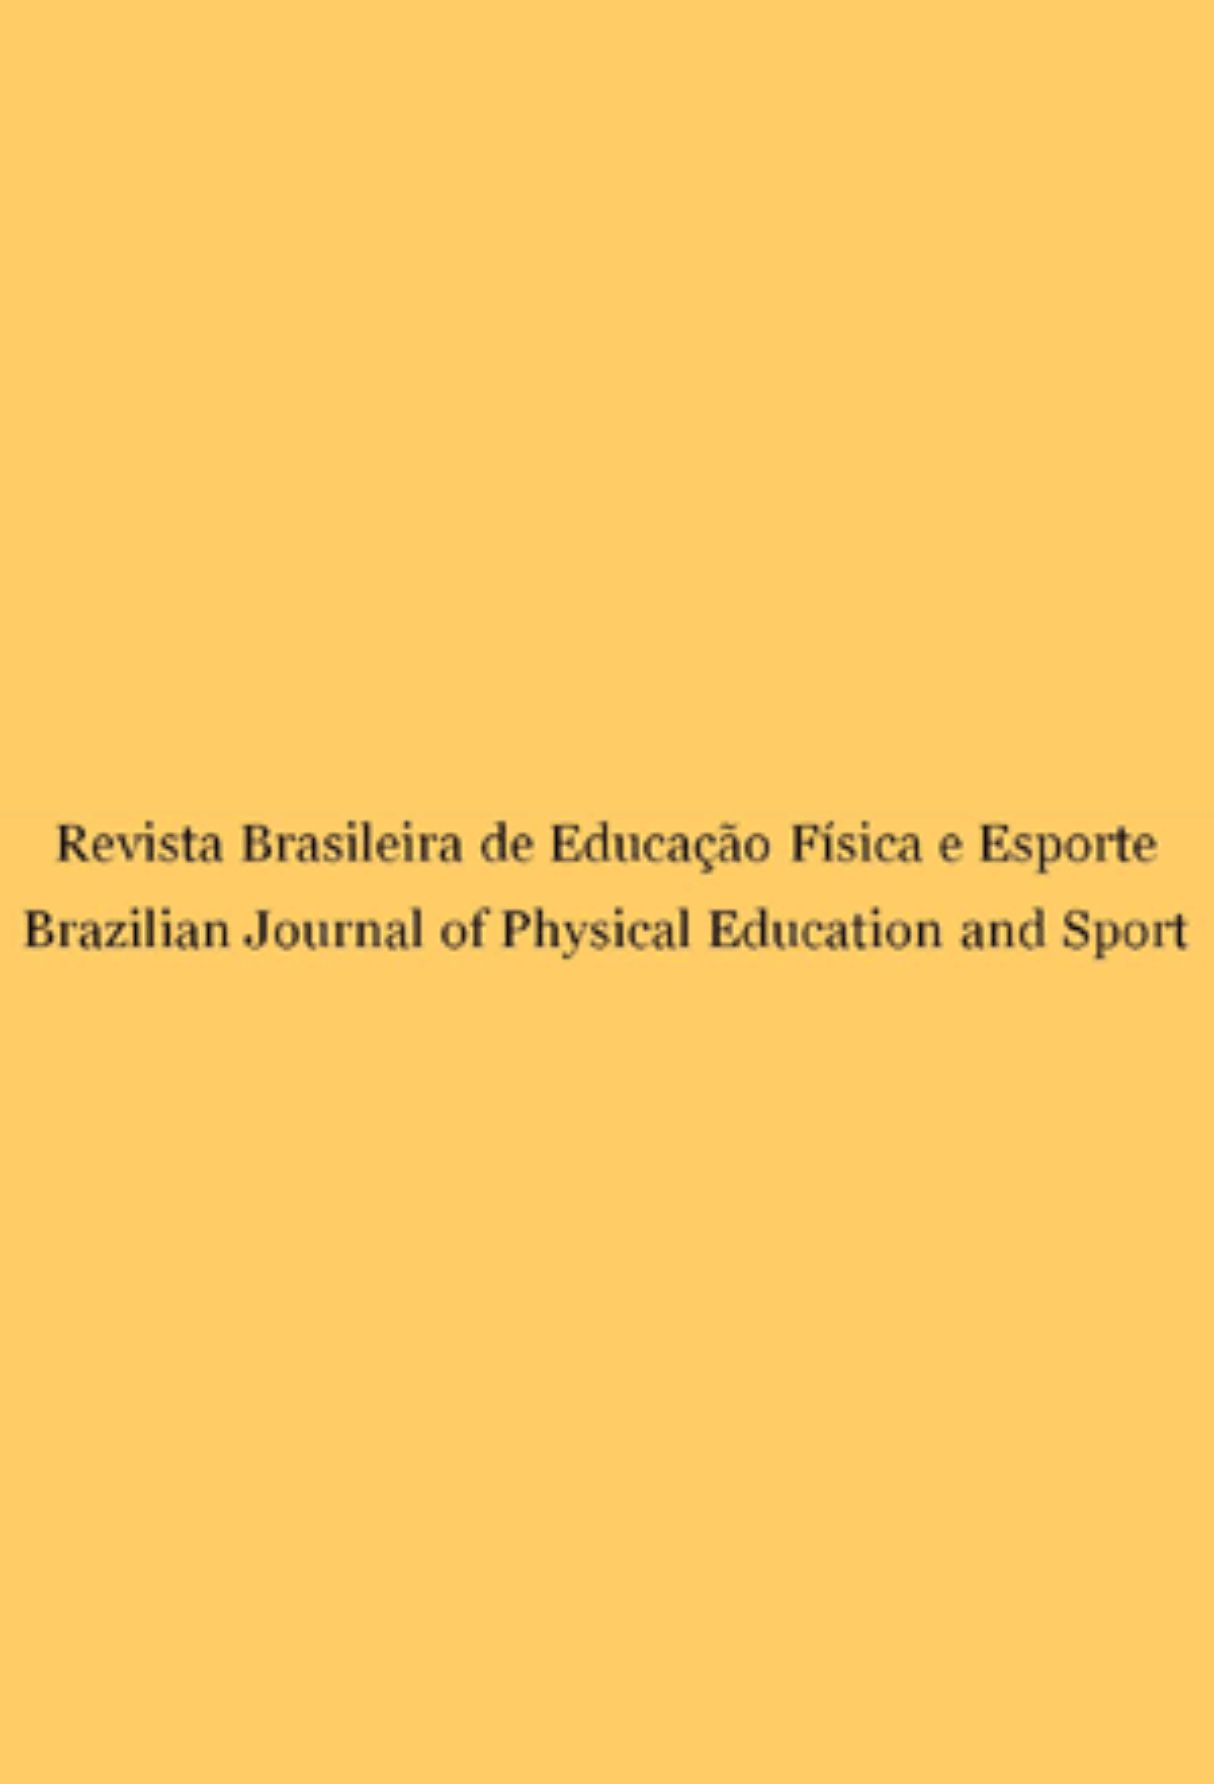 Capa: Revista Brasileira de Educação Física e Esporte